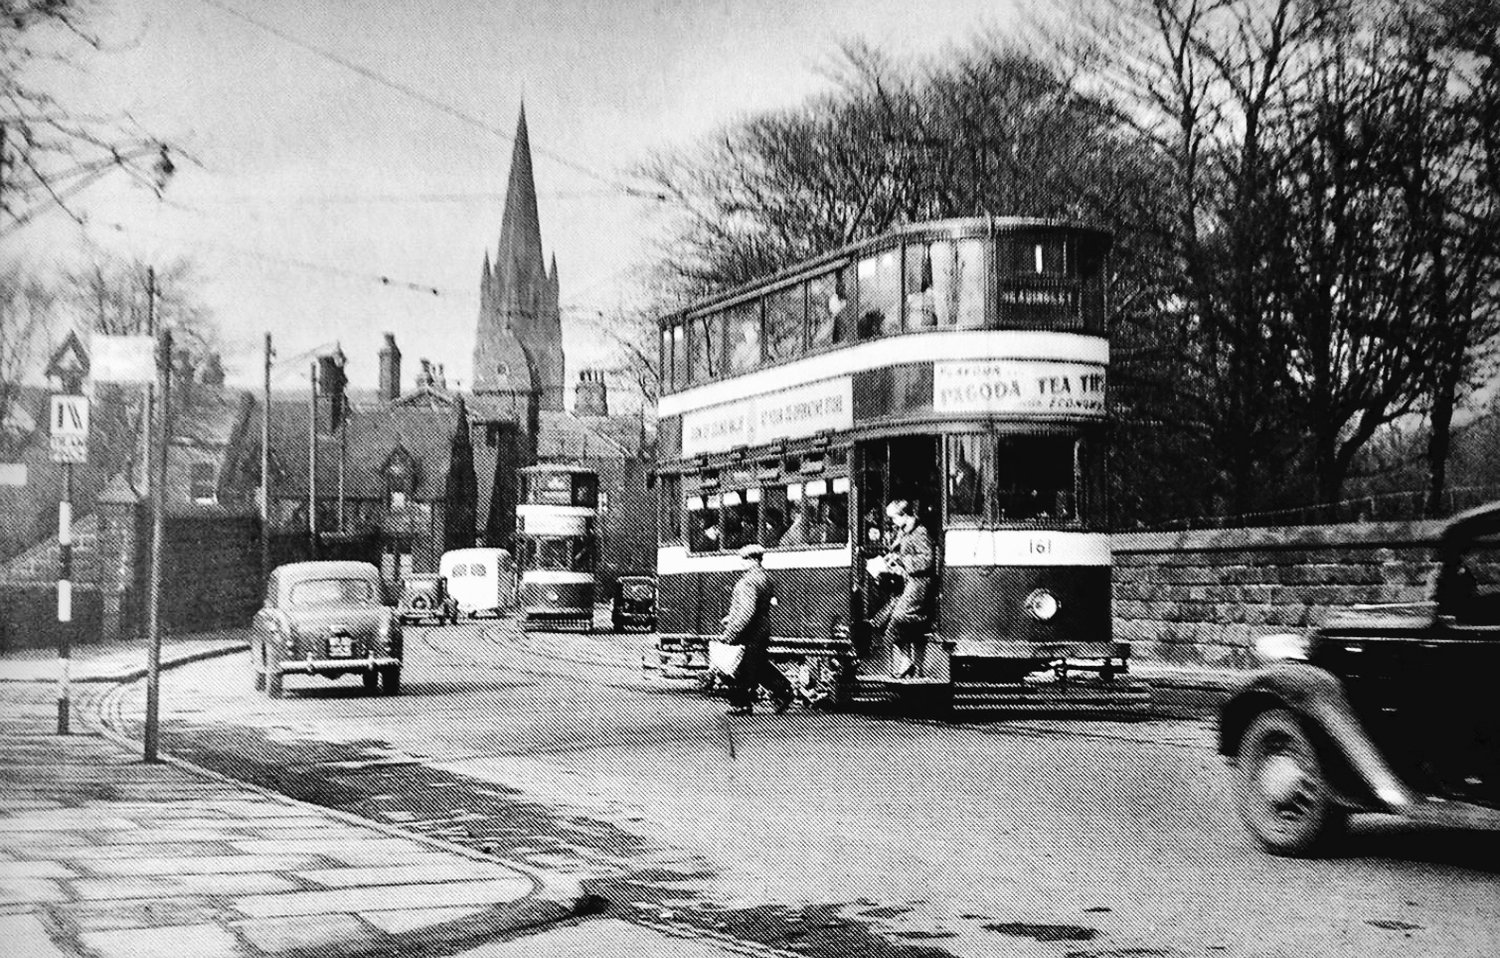 Headingley Lane, approaching Headingley Centre, 1956